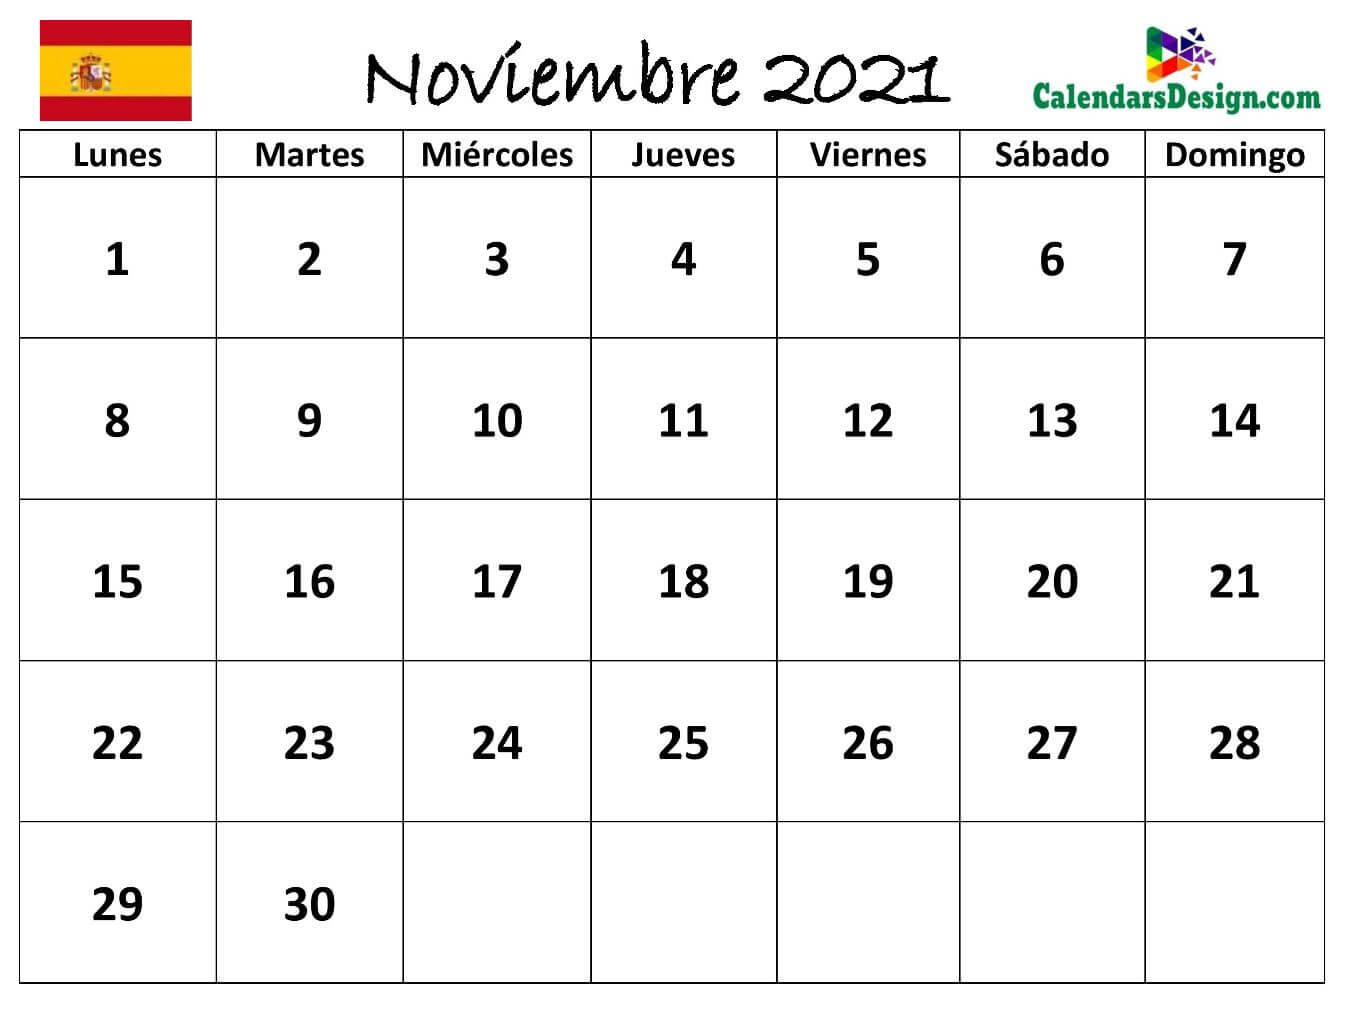 Calendario para noviembre de 2021 Word